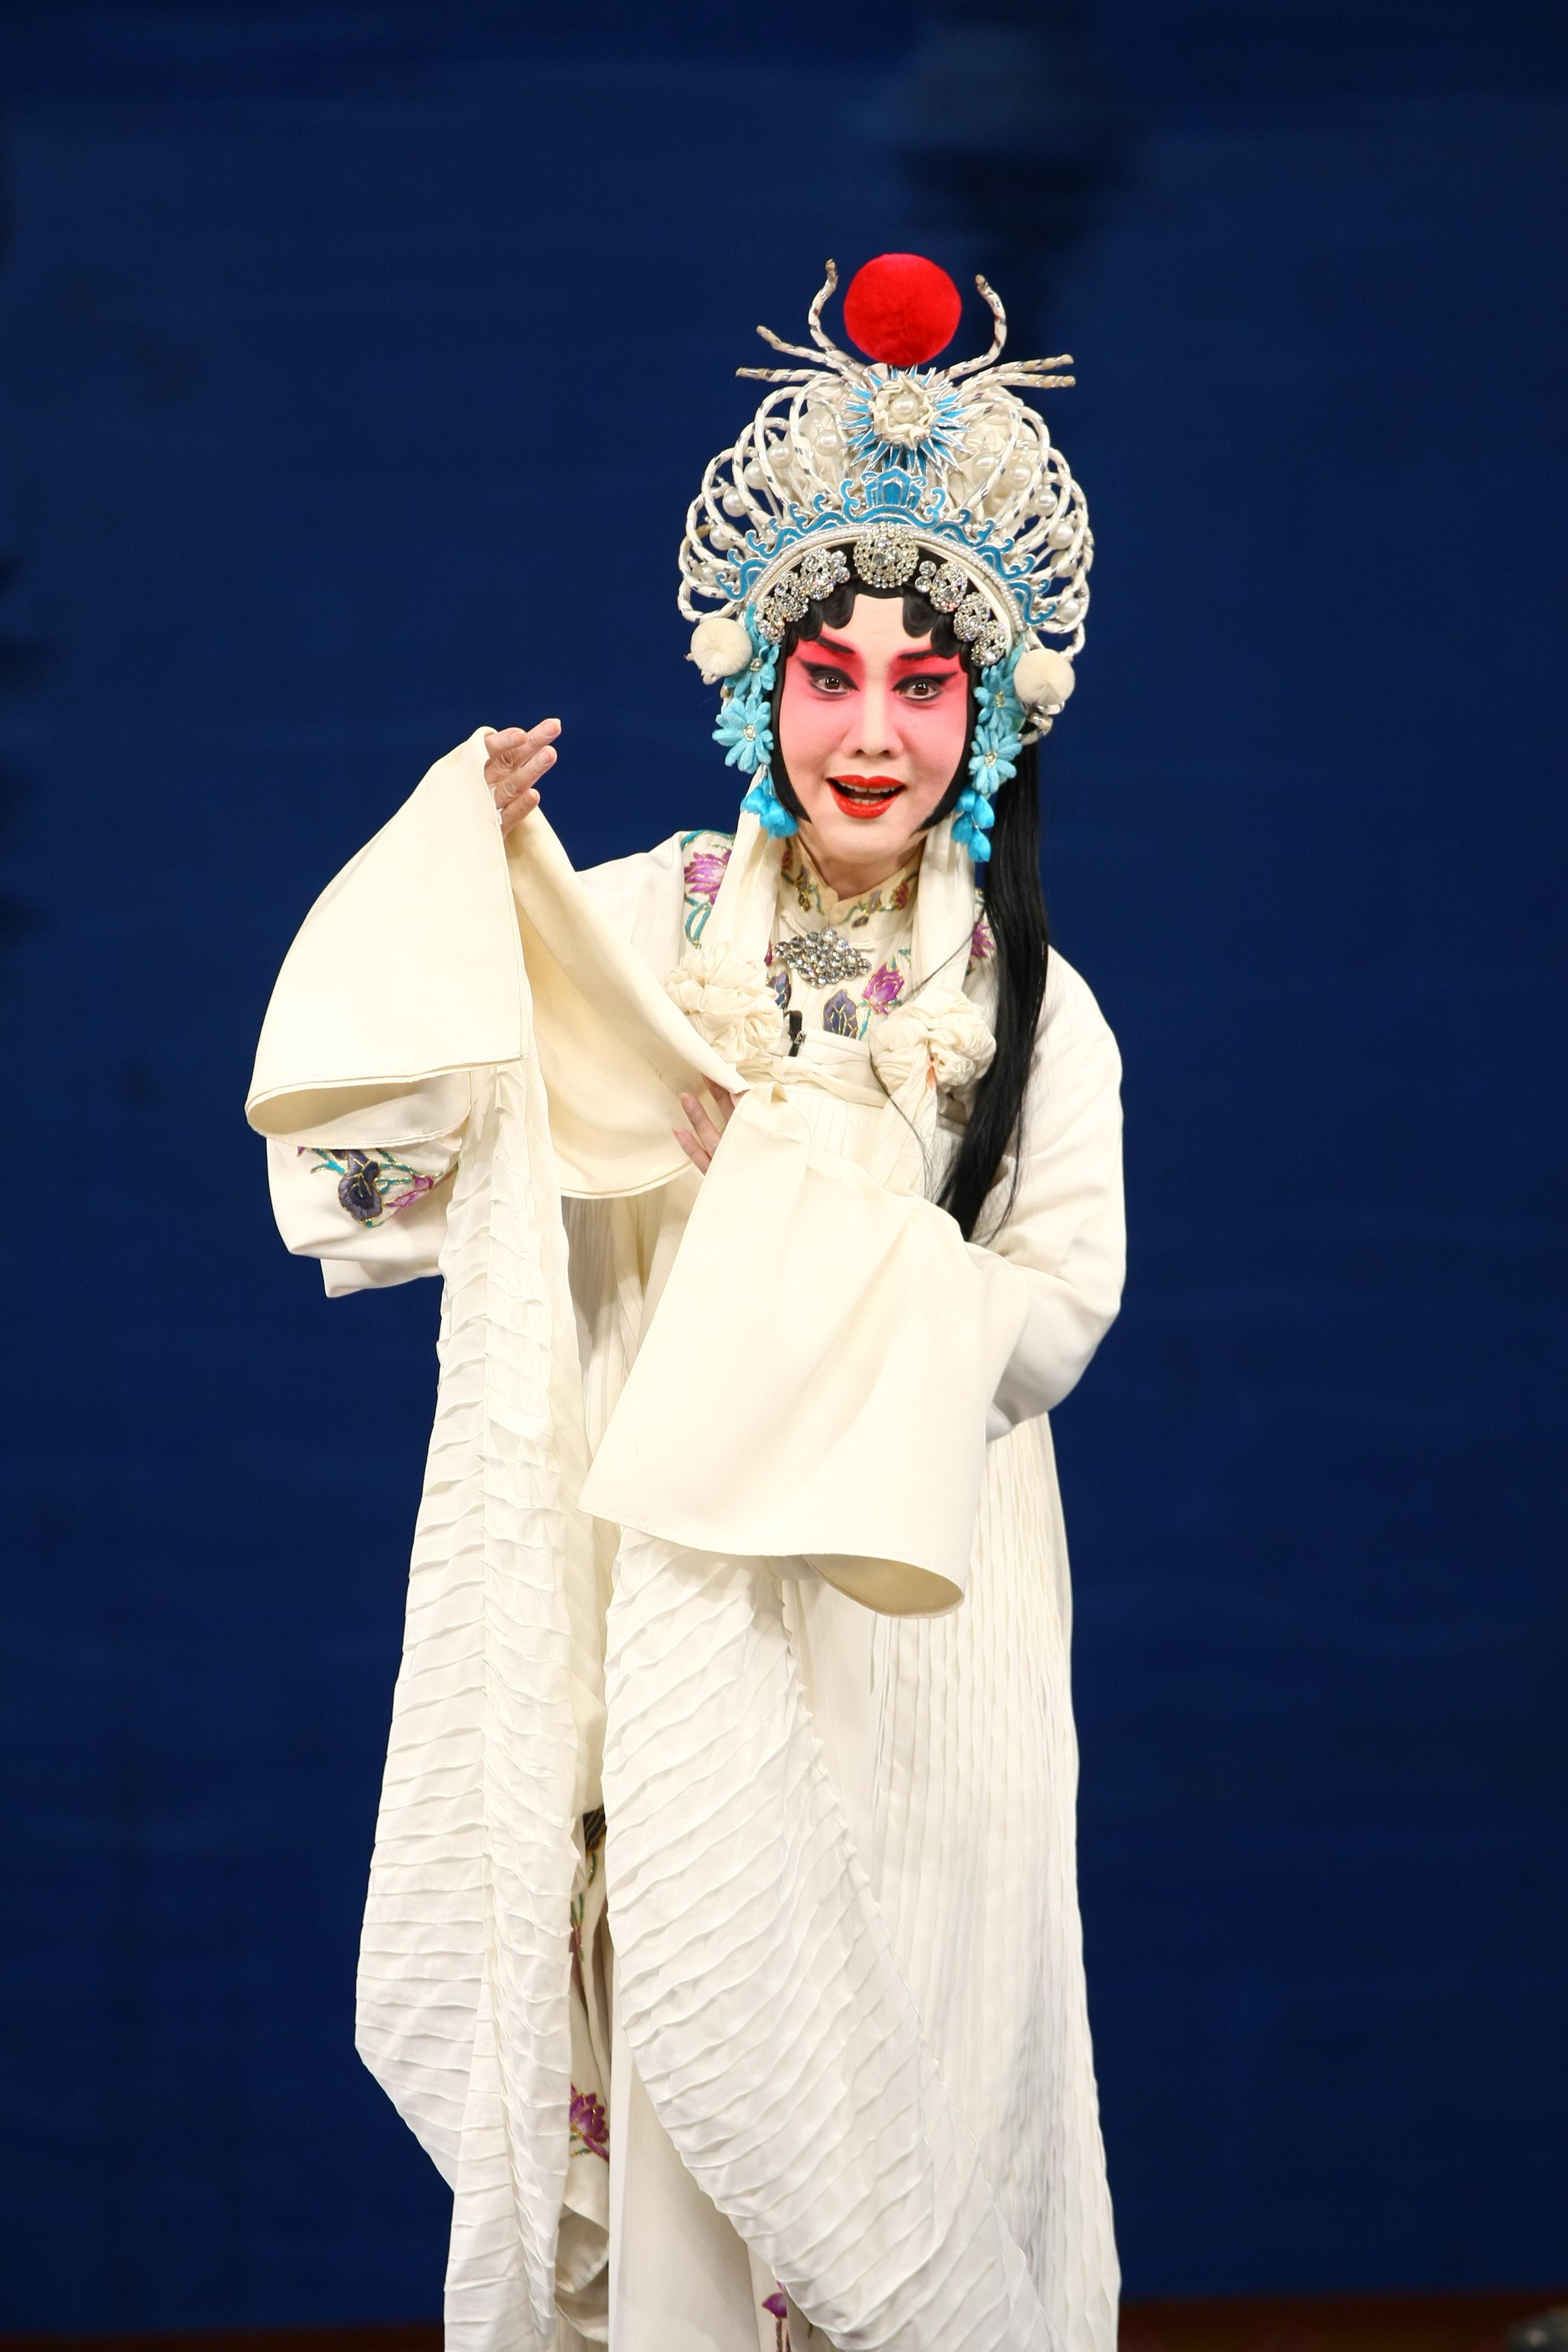 康樂及文化事務署邀得北京京劇院六月中旬來港，獻演三場京劇藝術大師張君秋的青衣流派經典劇目作為今年中國戲曲節的開幕節目。圖為《金山寺．斷橋．雷峰塔》劇照。